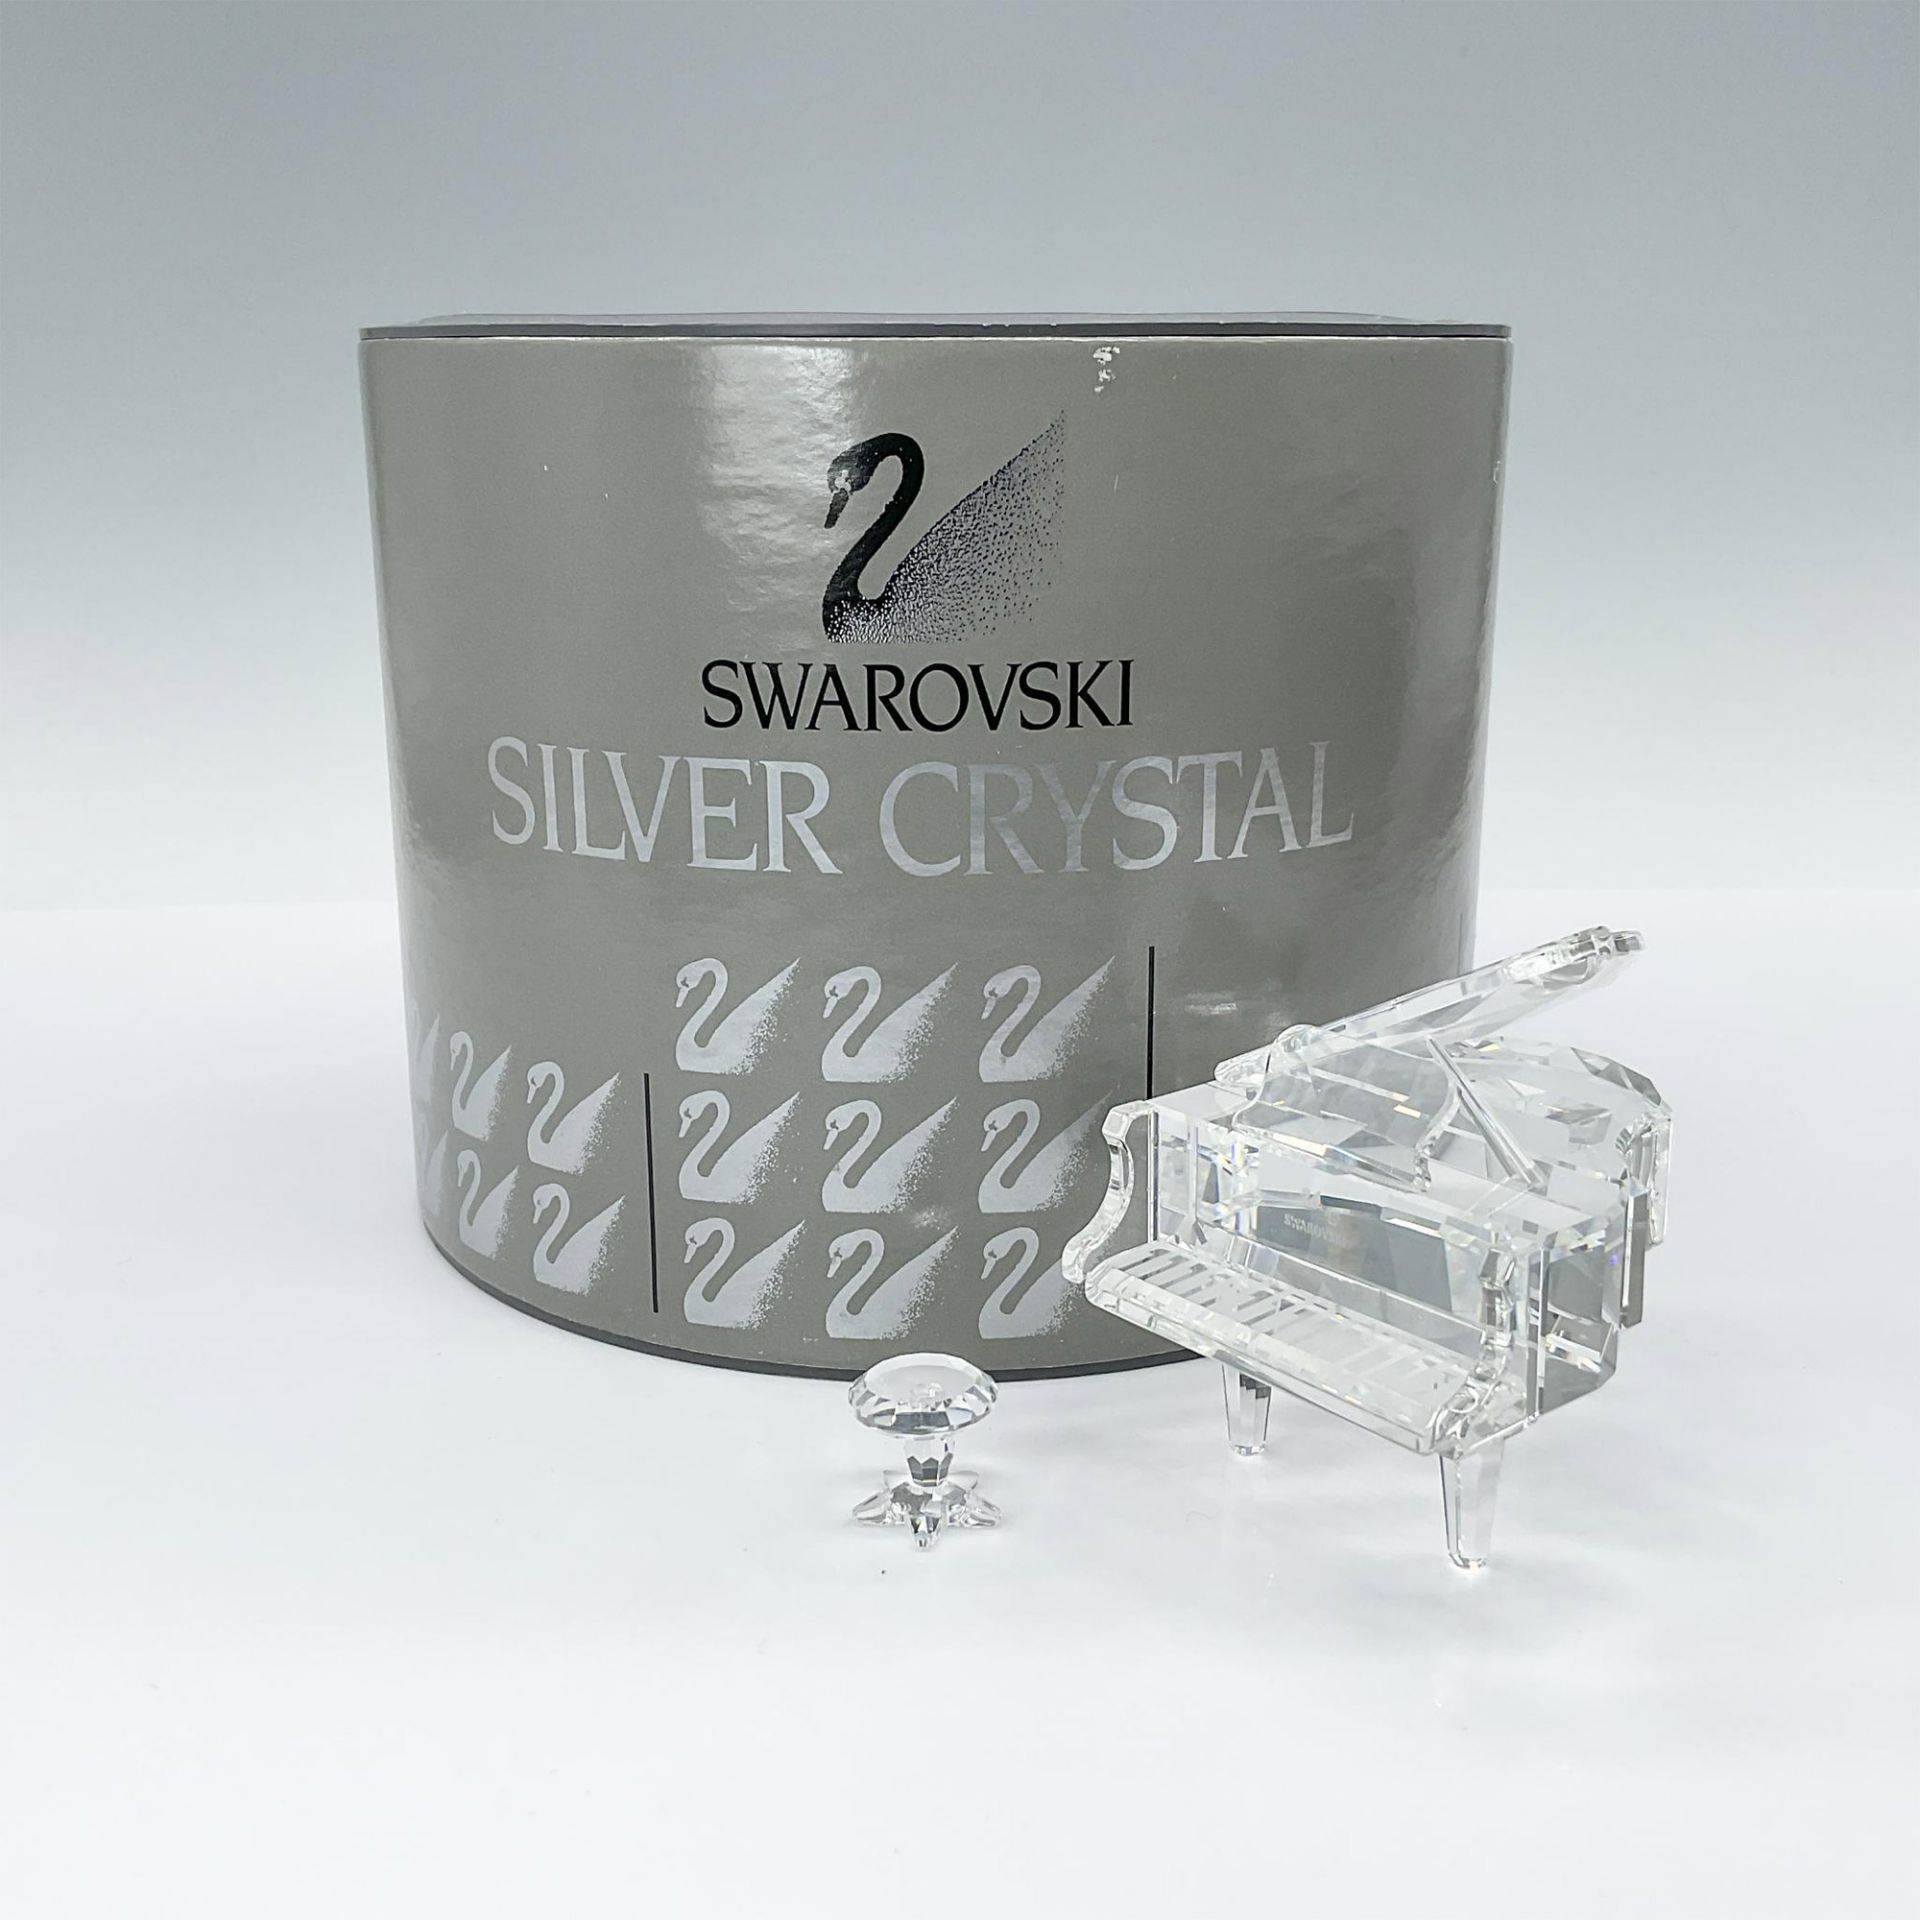 2pc Swarovski Silver Crystal Figurines, Grand Piano & Stool - Image 4 of 4